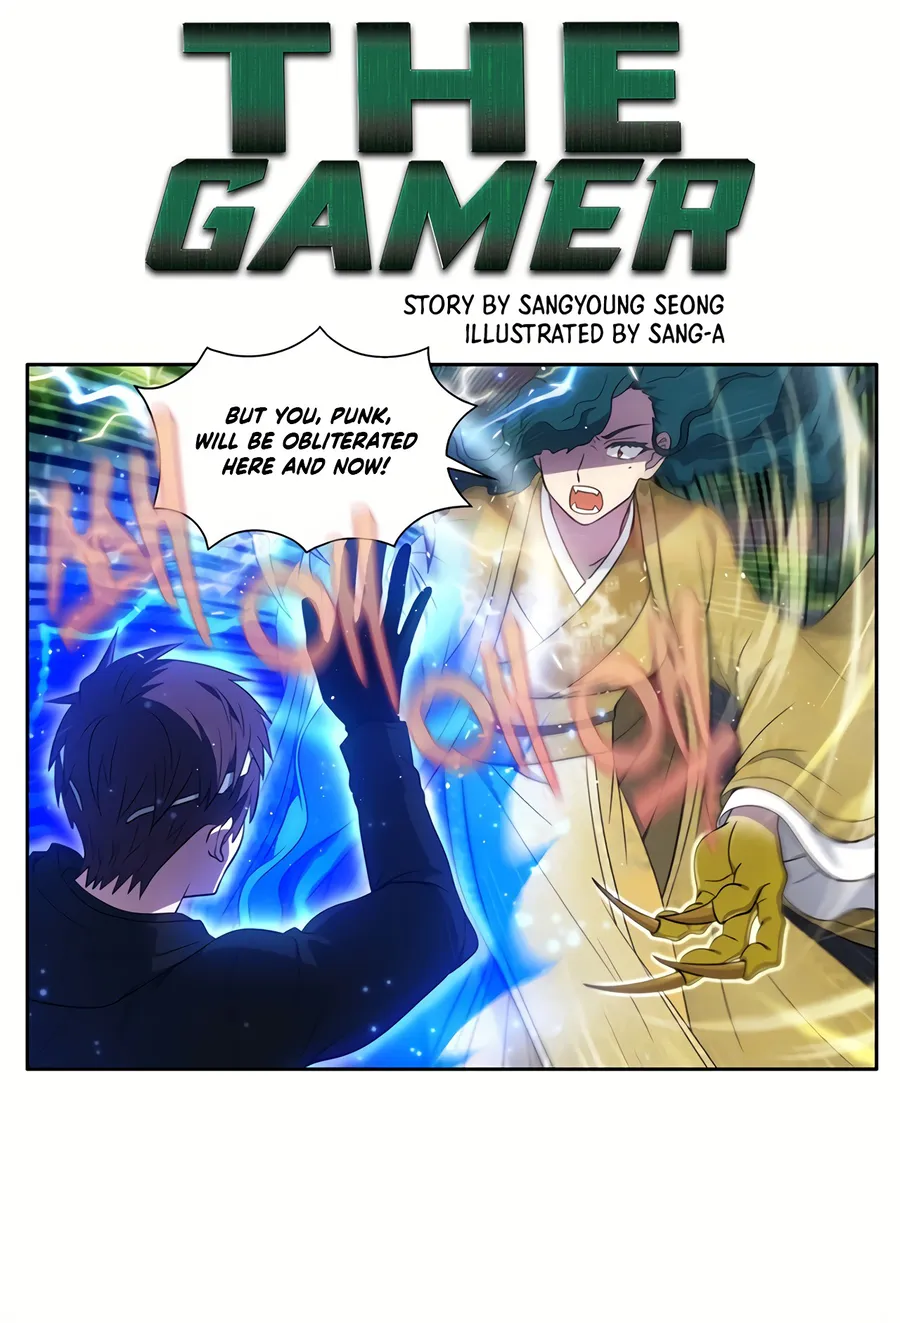 The Gamer Manga Online